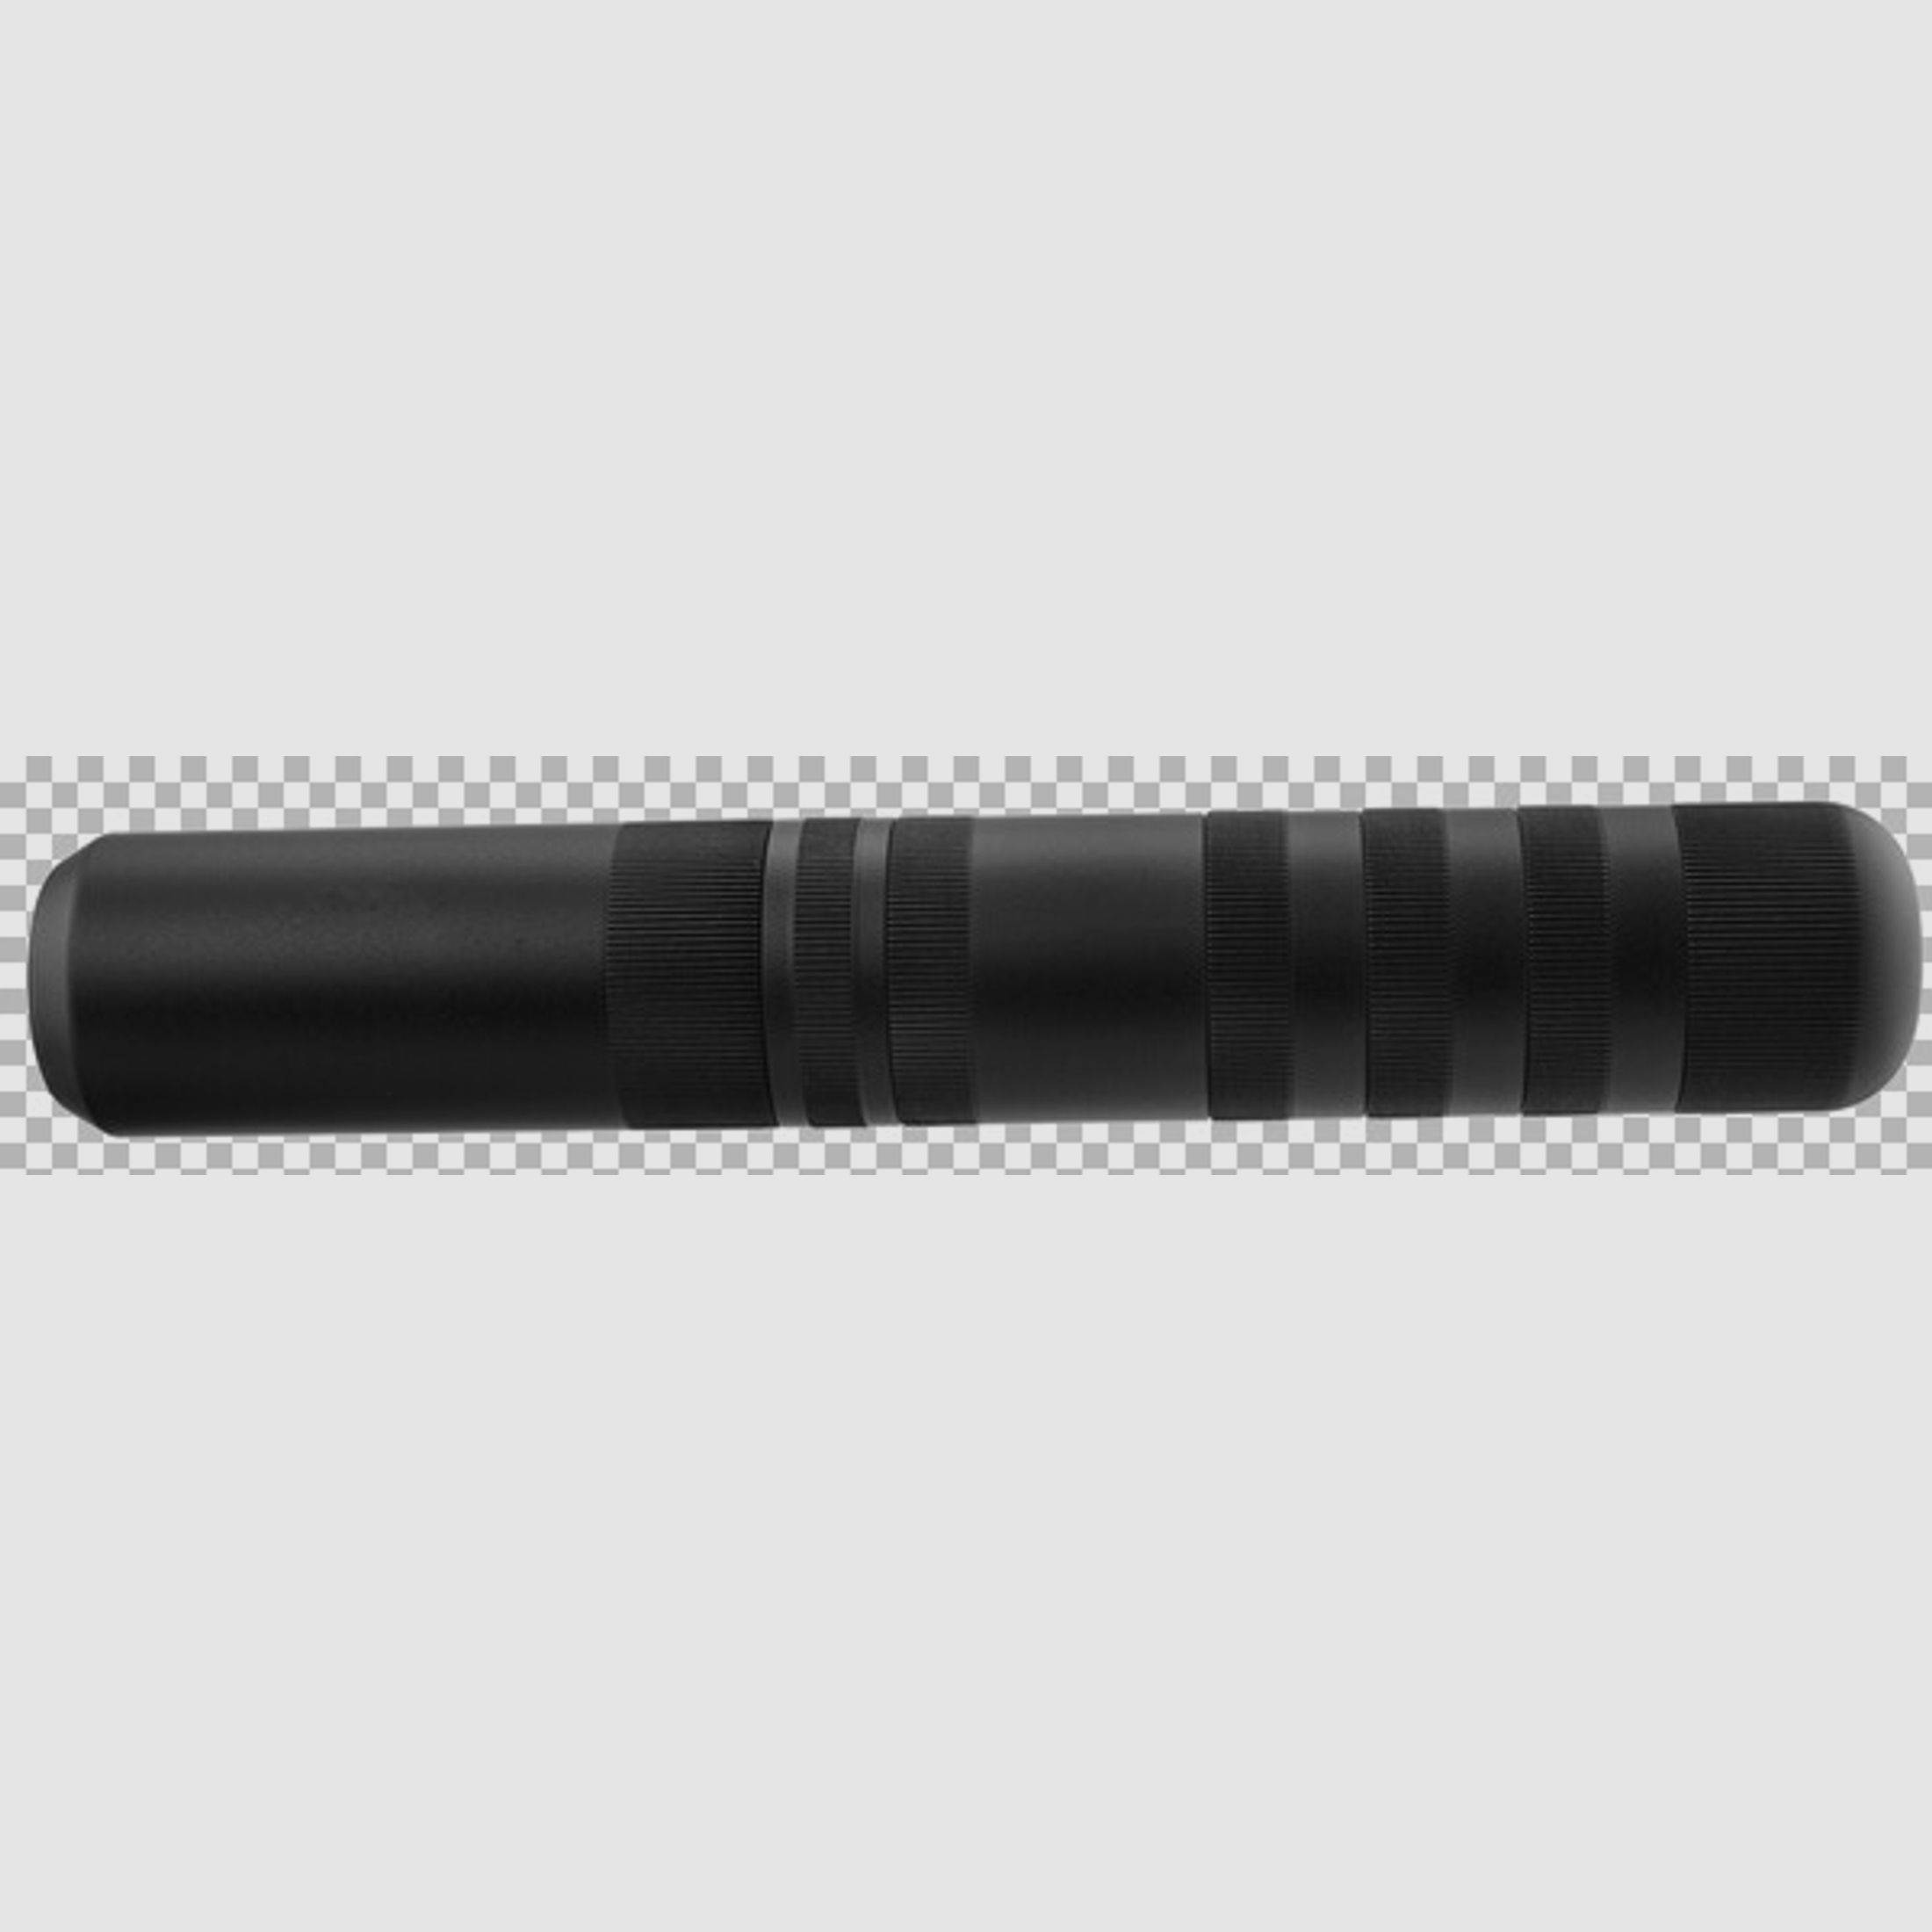 Multikaliber Schalldämpfer WHMG 40. Universell von 4,5 mm (.17) bis 8 mm. Für Jagd, Schießkino.